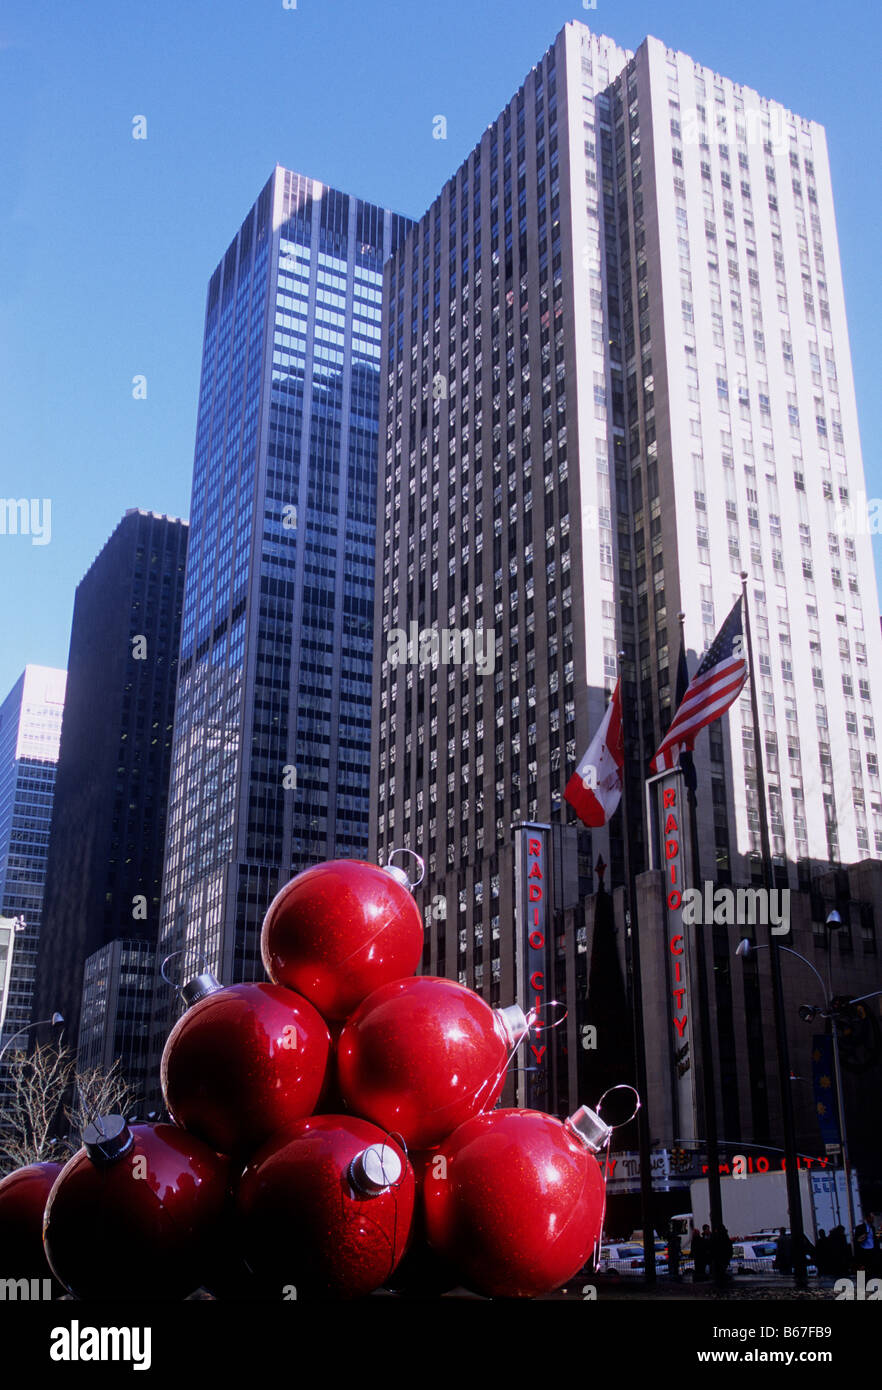 Grattacieli sulla Sixth Avenue, (Avenue of the Americas) New York City. Radio City Music Hall. Gigantesche decorazioni rosse di Natale sulla strada. STATI UNITI Foto Stock